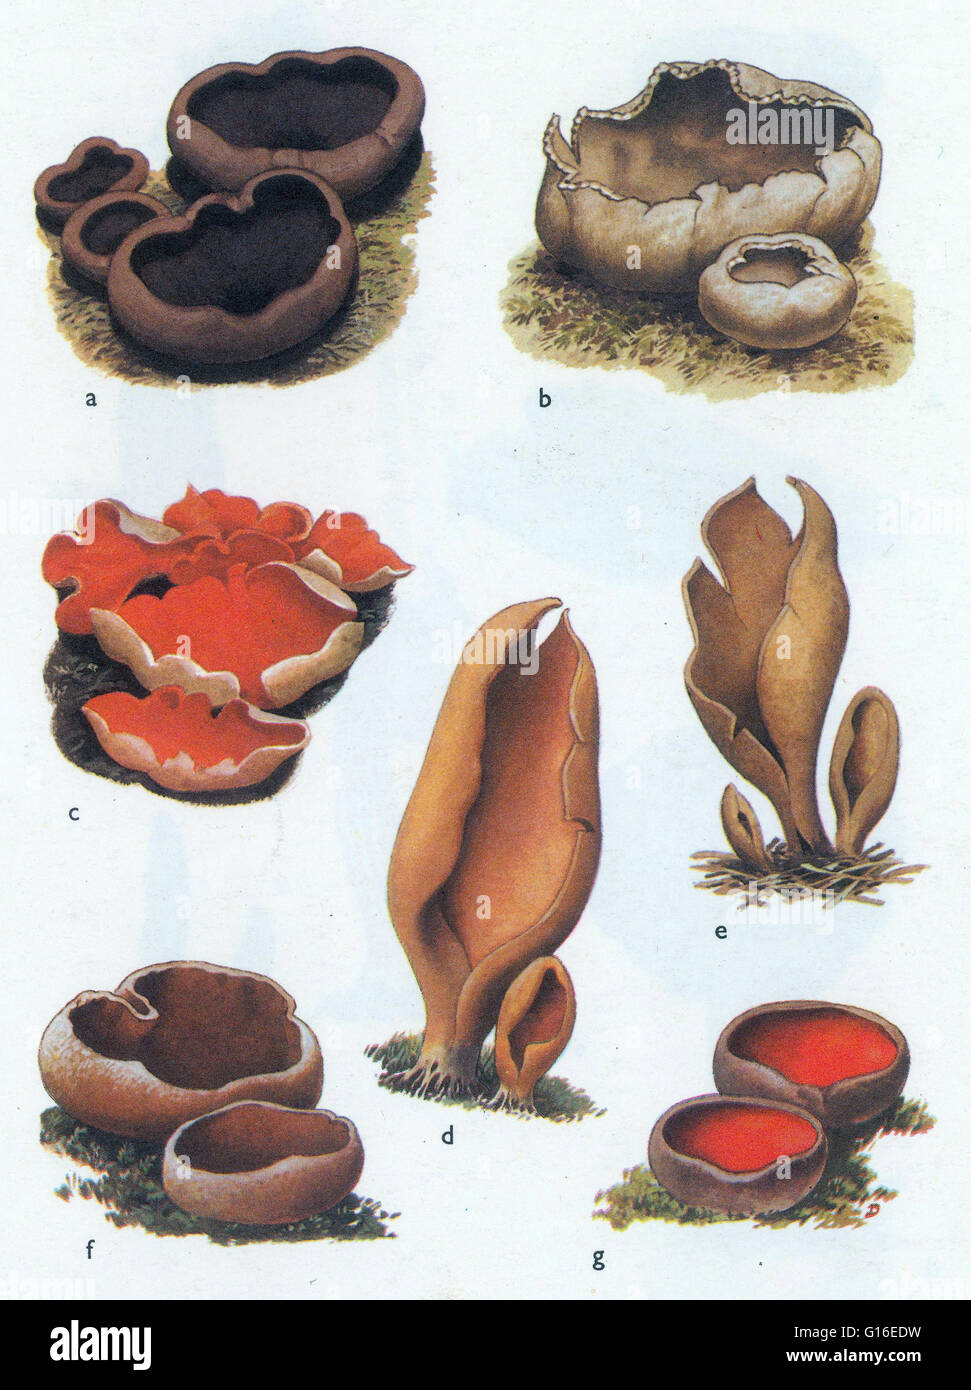 Peziza Pilze. Peziza ist eine große Gattung der saprophytischen Cup-Pilze, die auf dem Boden, faulenden Holz oder Dung wachsen. Die meisten Mitglieder dieser Gattung sind von unbekannten Eßbarkeit und sind schwer zu identifizieren als eigenständige Arten ohne Einsatz der Mikroskopie. Ein Pilz ist eine Stockfoto